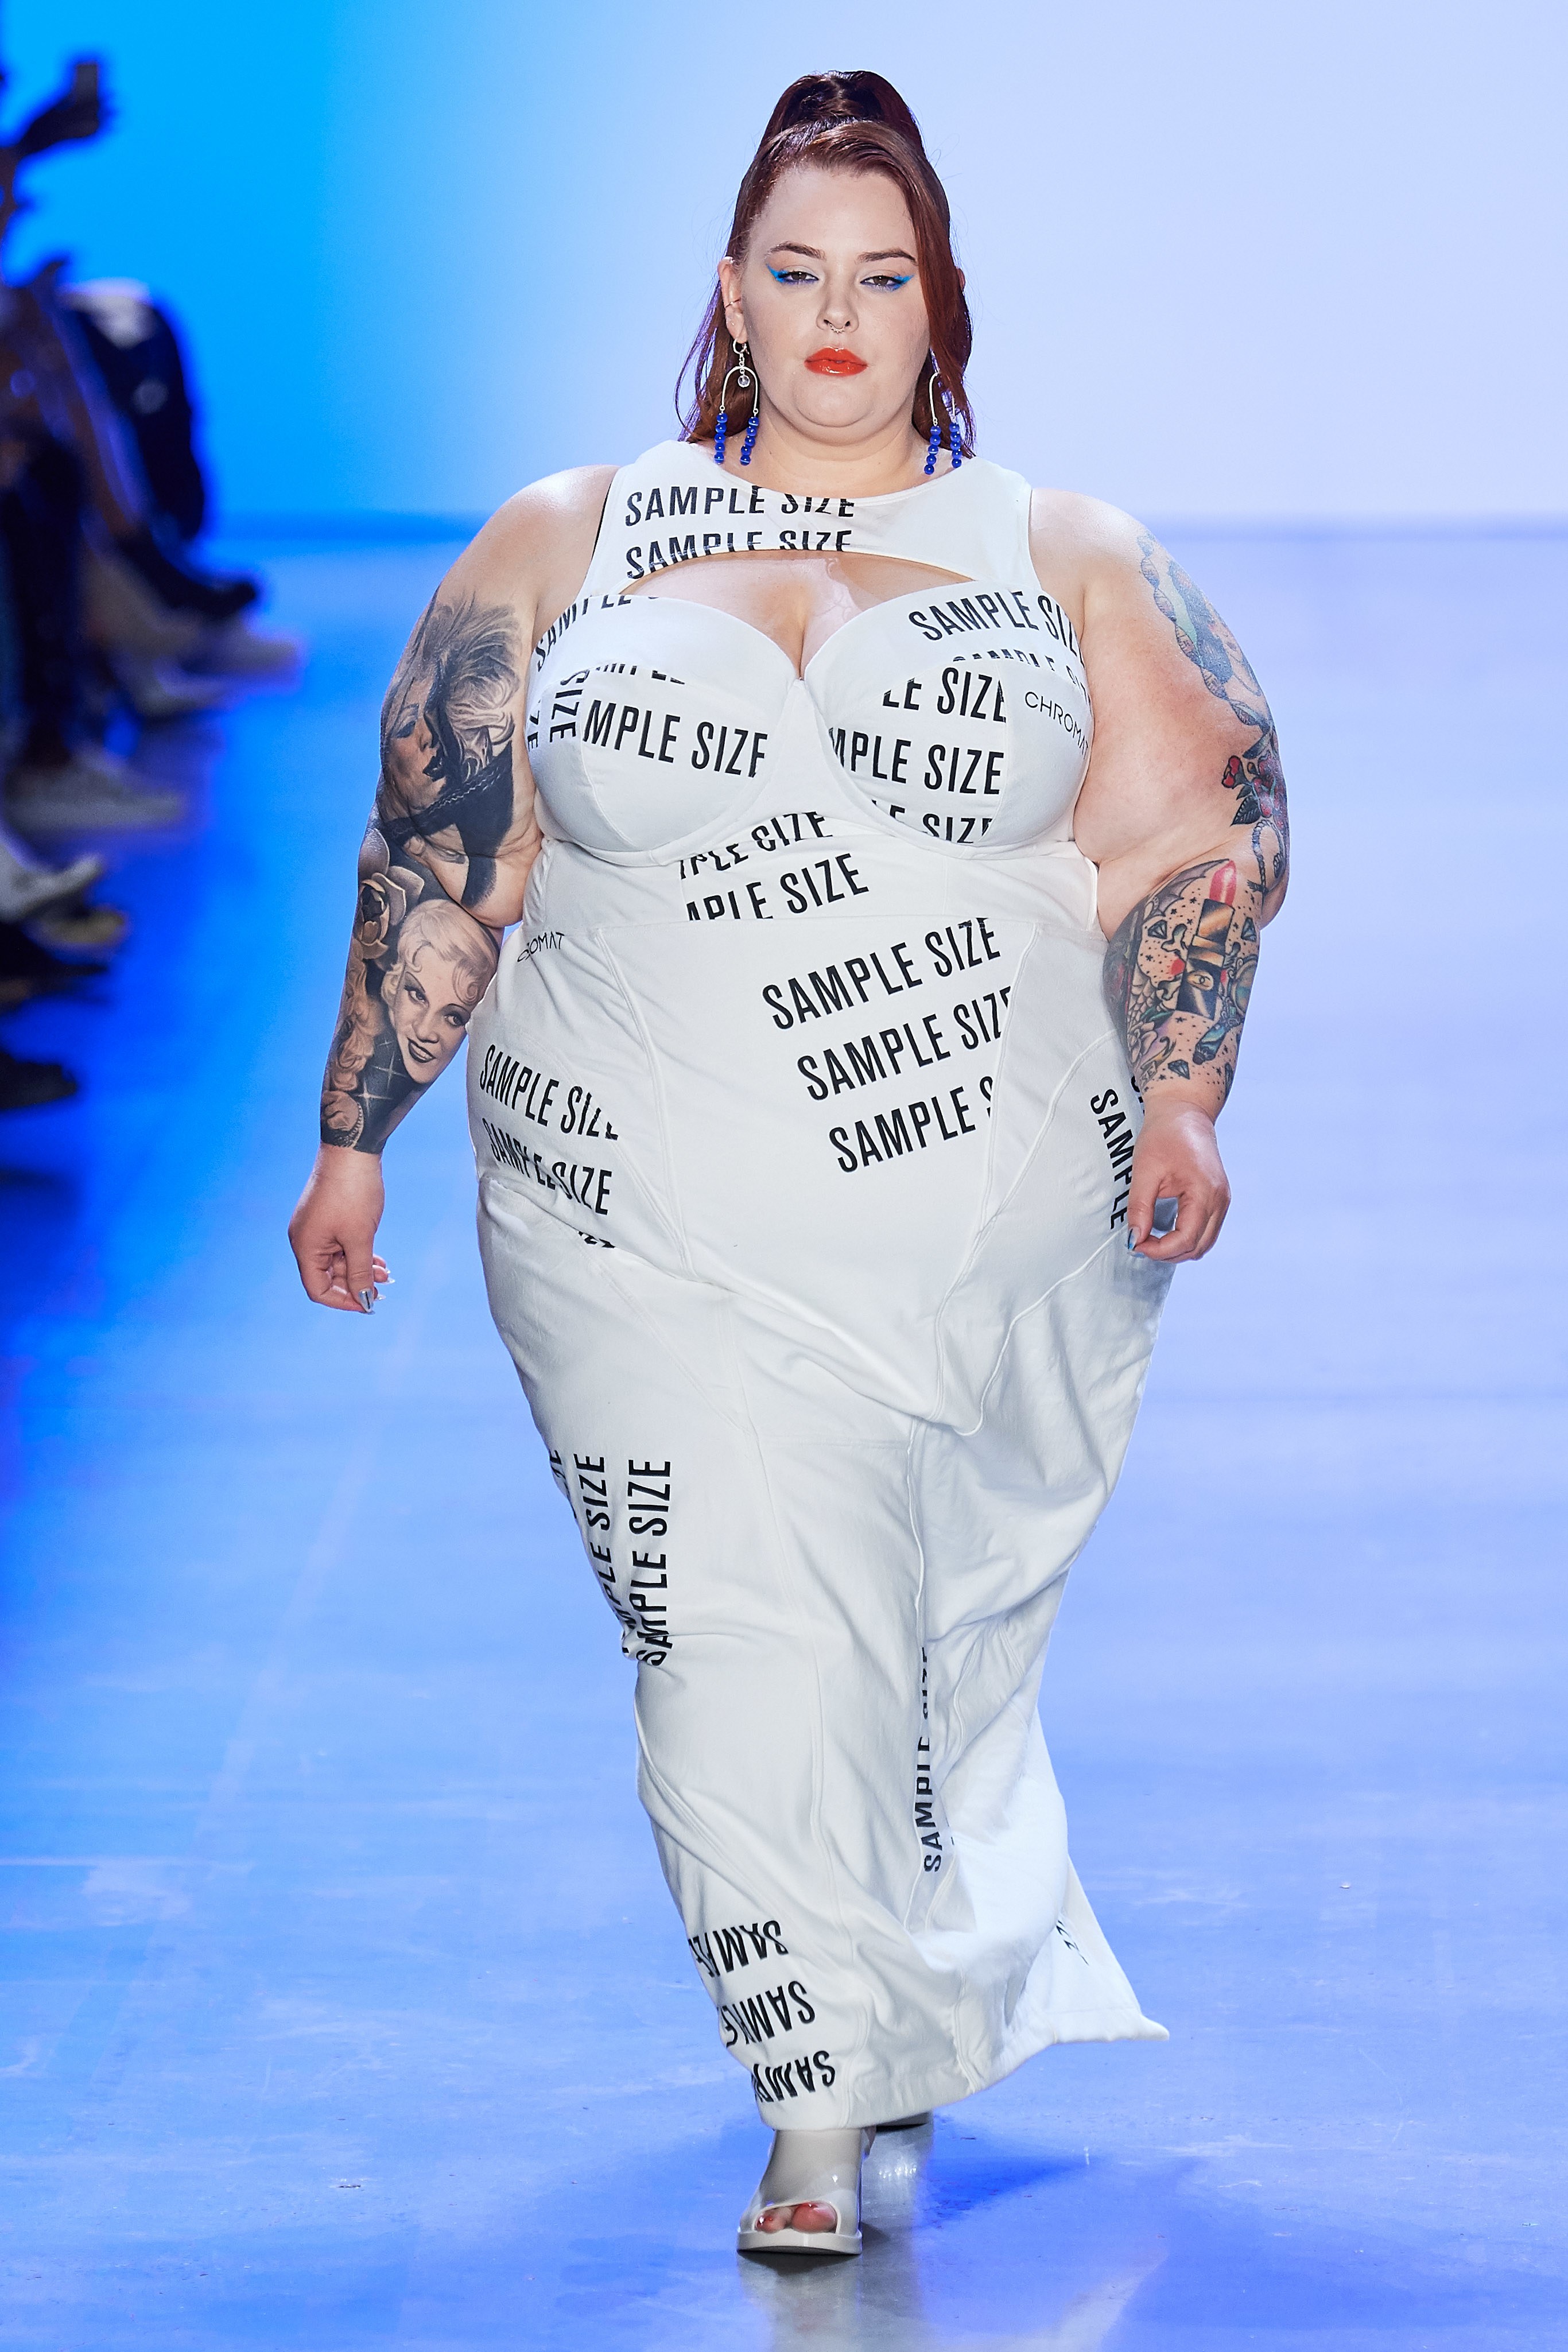 Tess Holliday tự tin trình diễn trong bộ váy gợi cảm in chữ "sample size" (kích cỡ tiêu chuẩn).&nbsp;